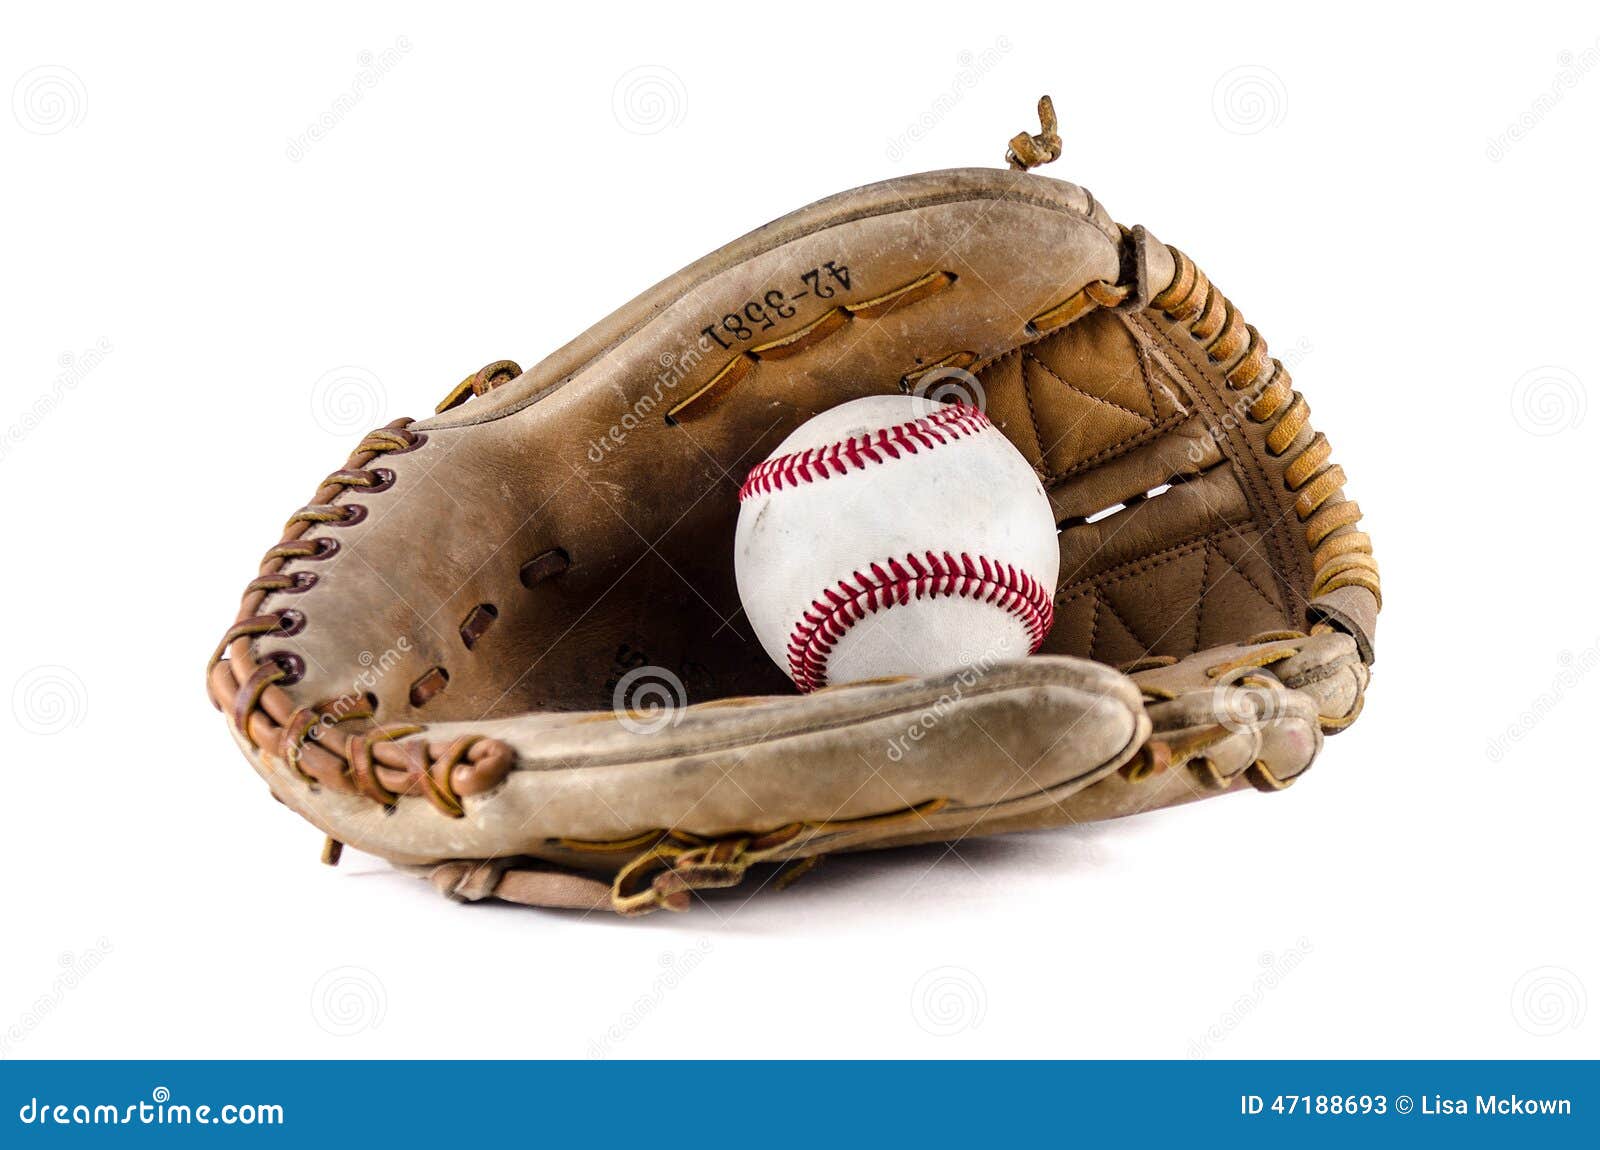 baseball game mitt and ball